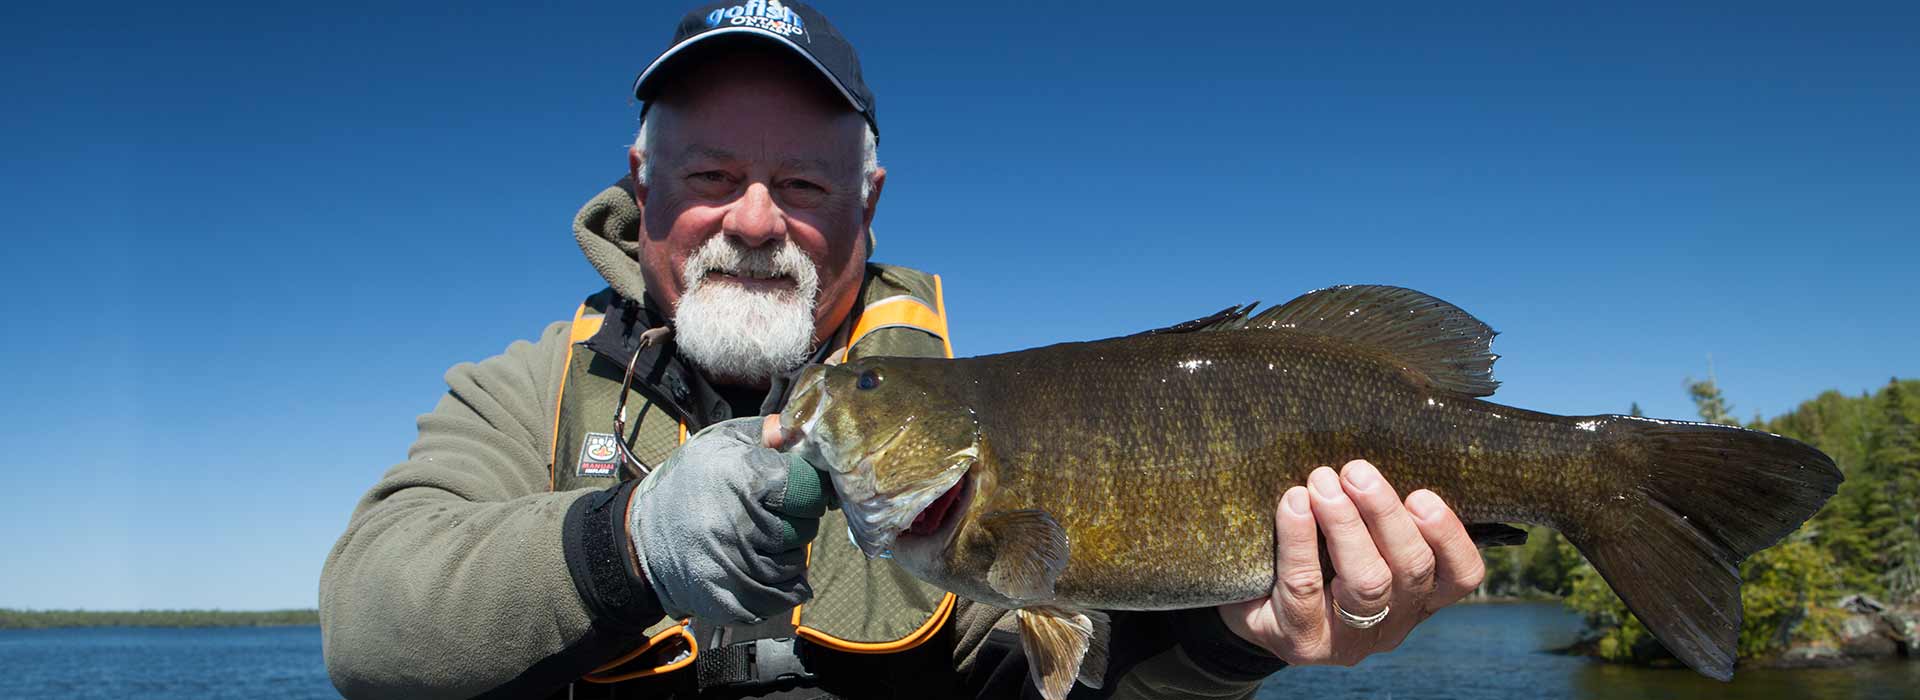 Smallmouth Bass Fishing, Northern Ontario, Canada